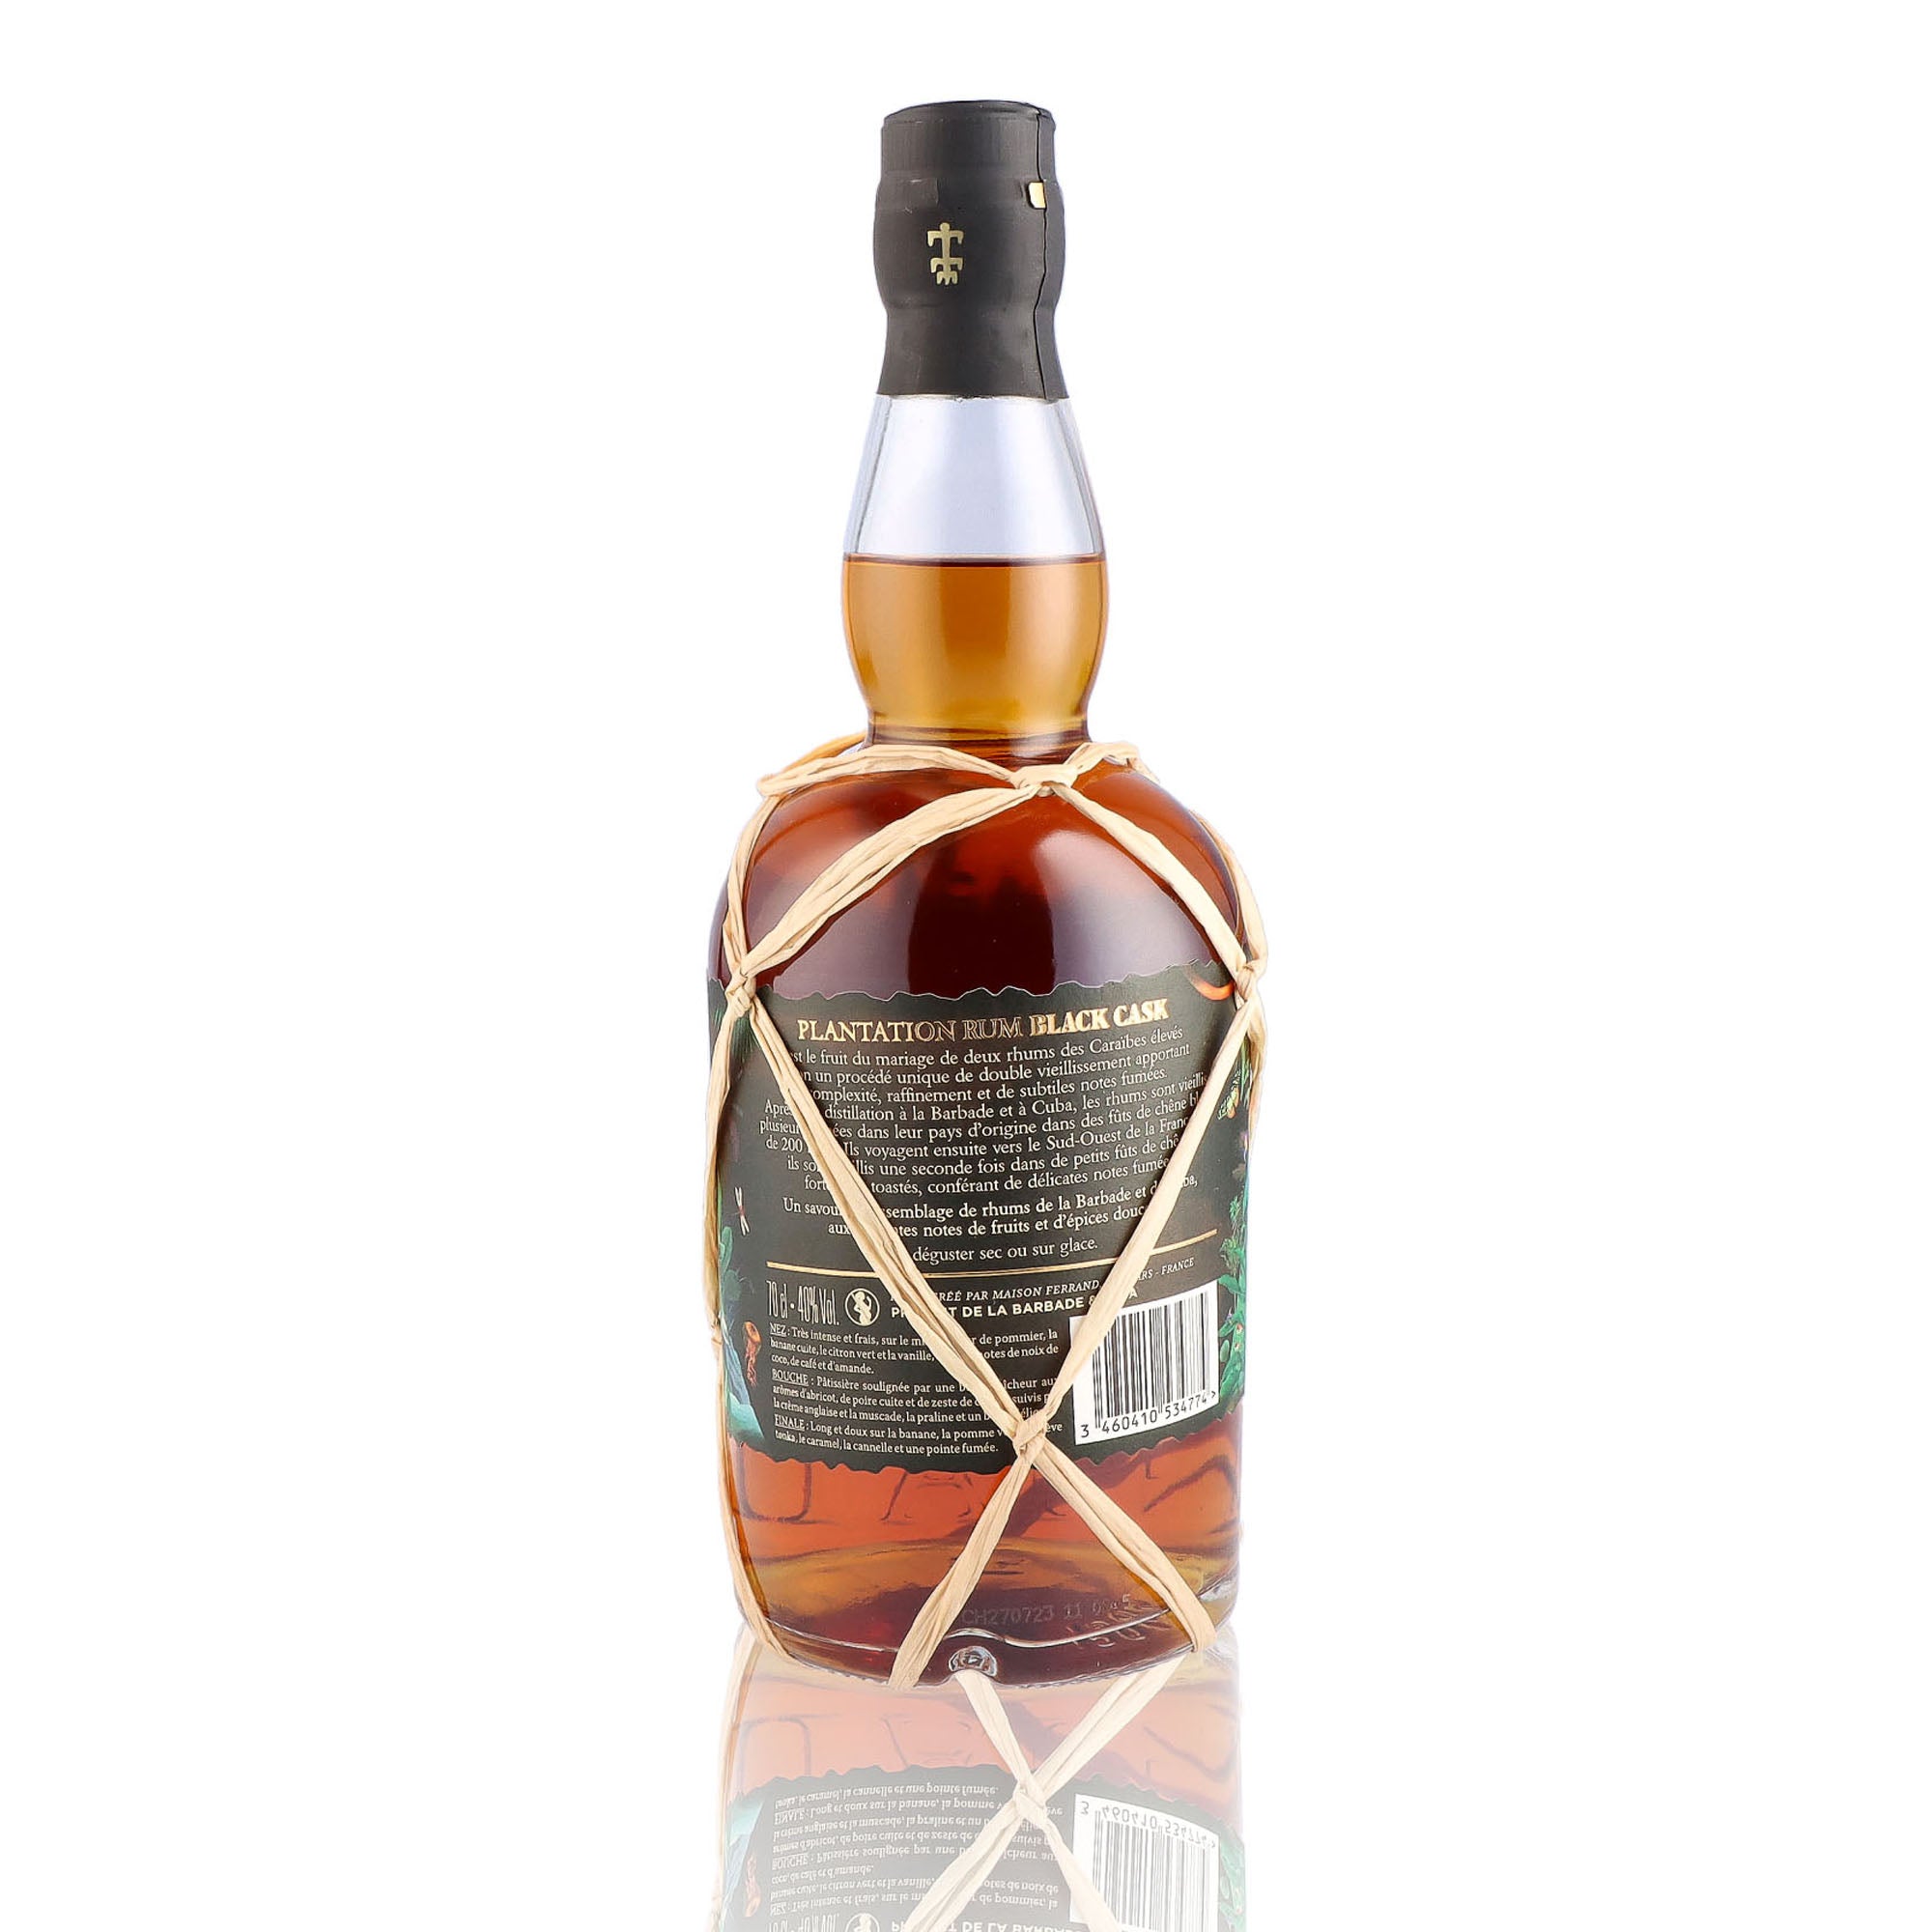 Une bouteille de rhum vieux, de la marque Plantation Rum, nommée Black Cask Barbados Cuba.